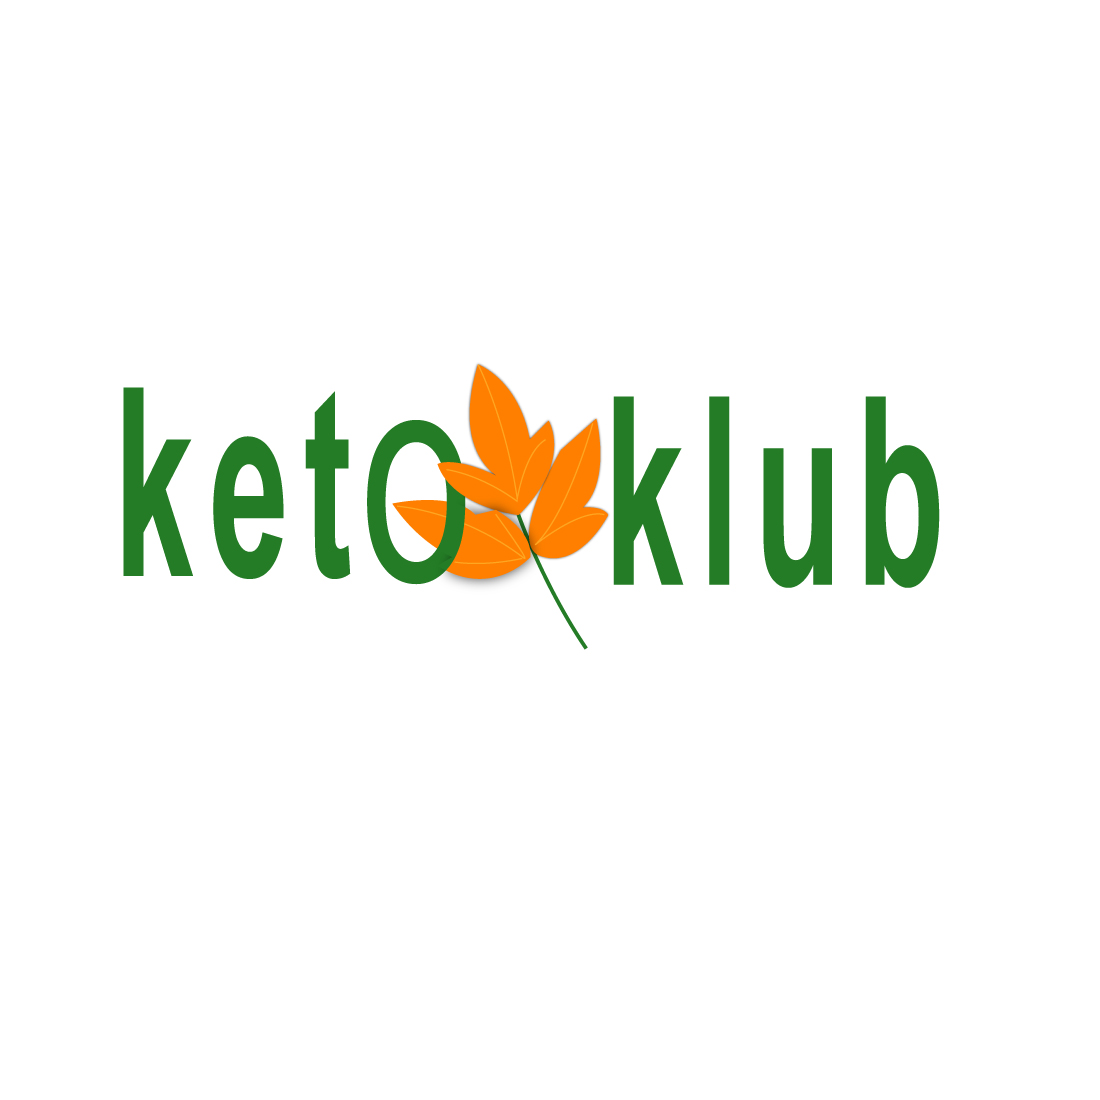 Keto Klub - TShirt Print Design preview image.